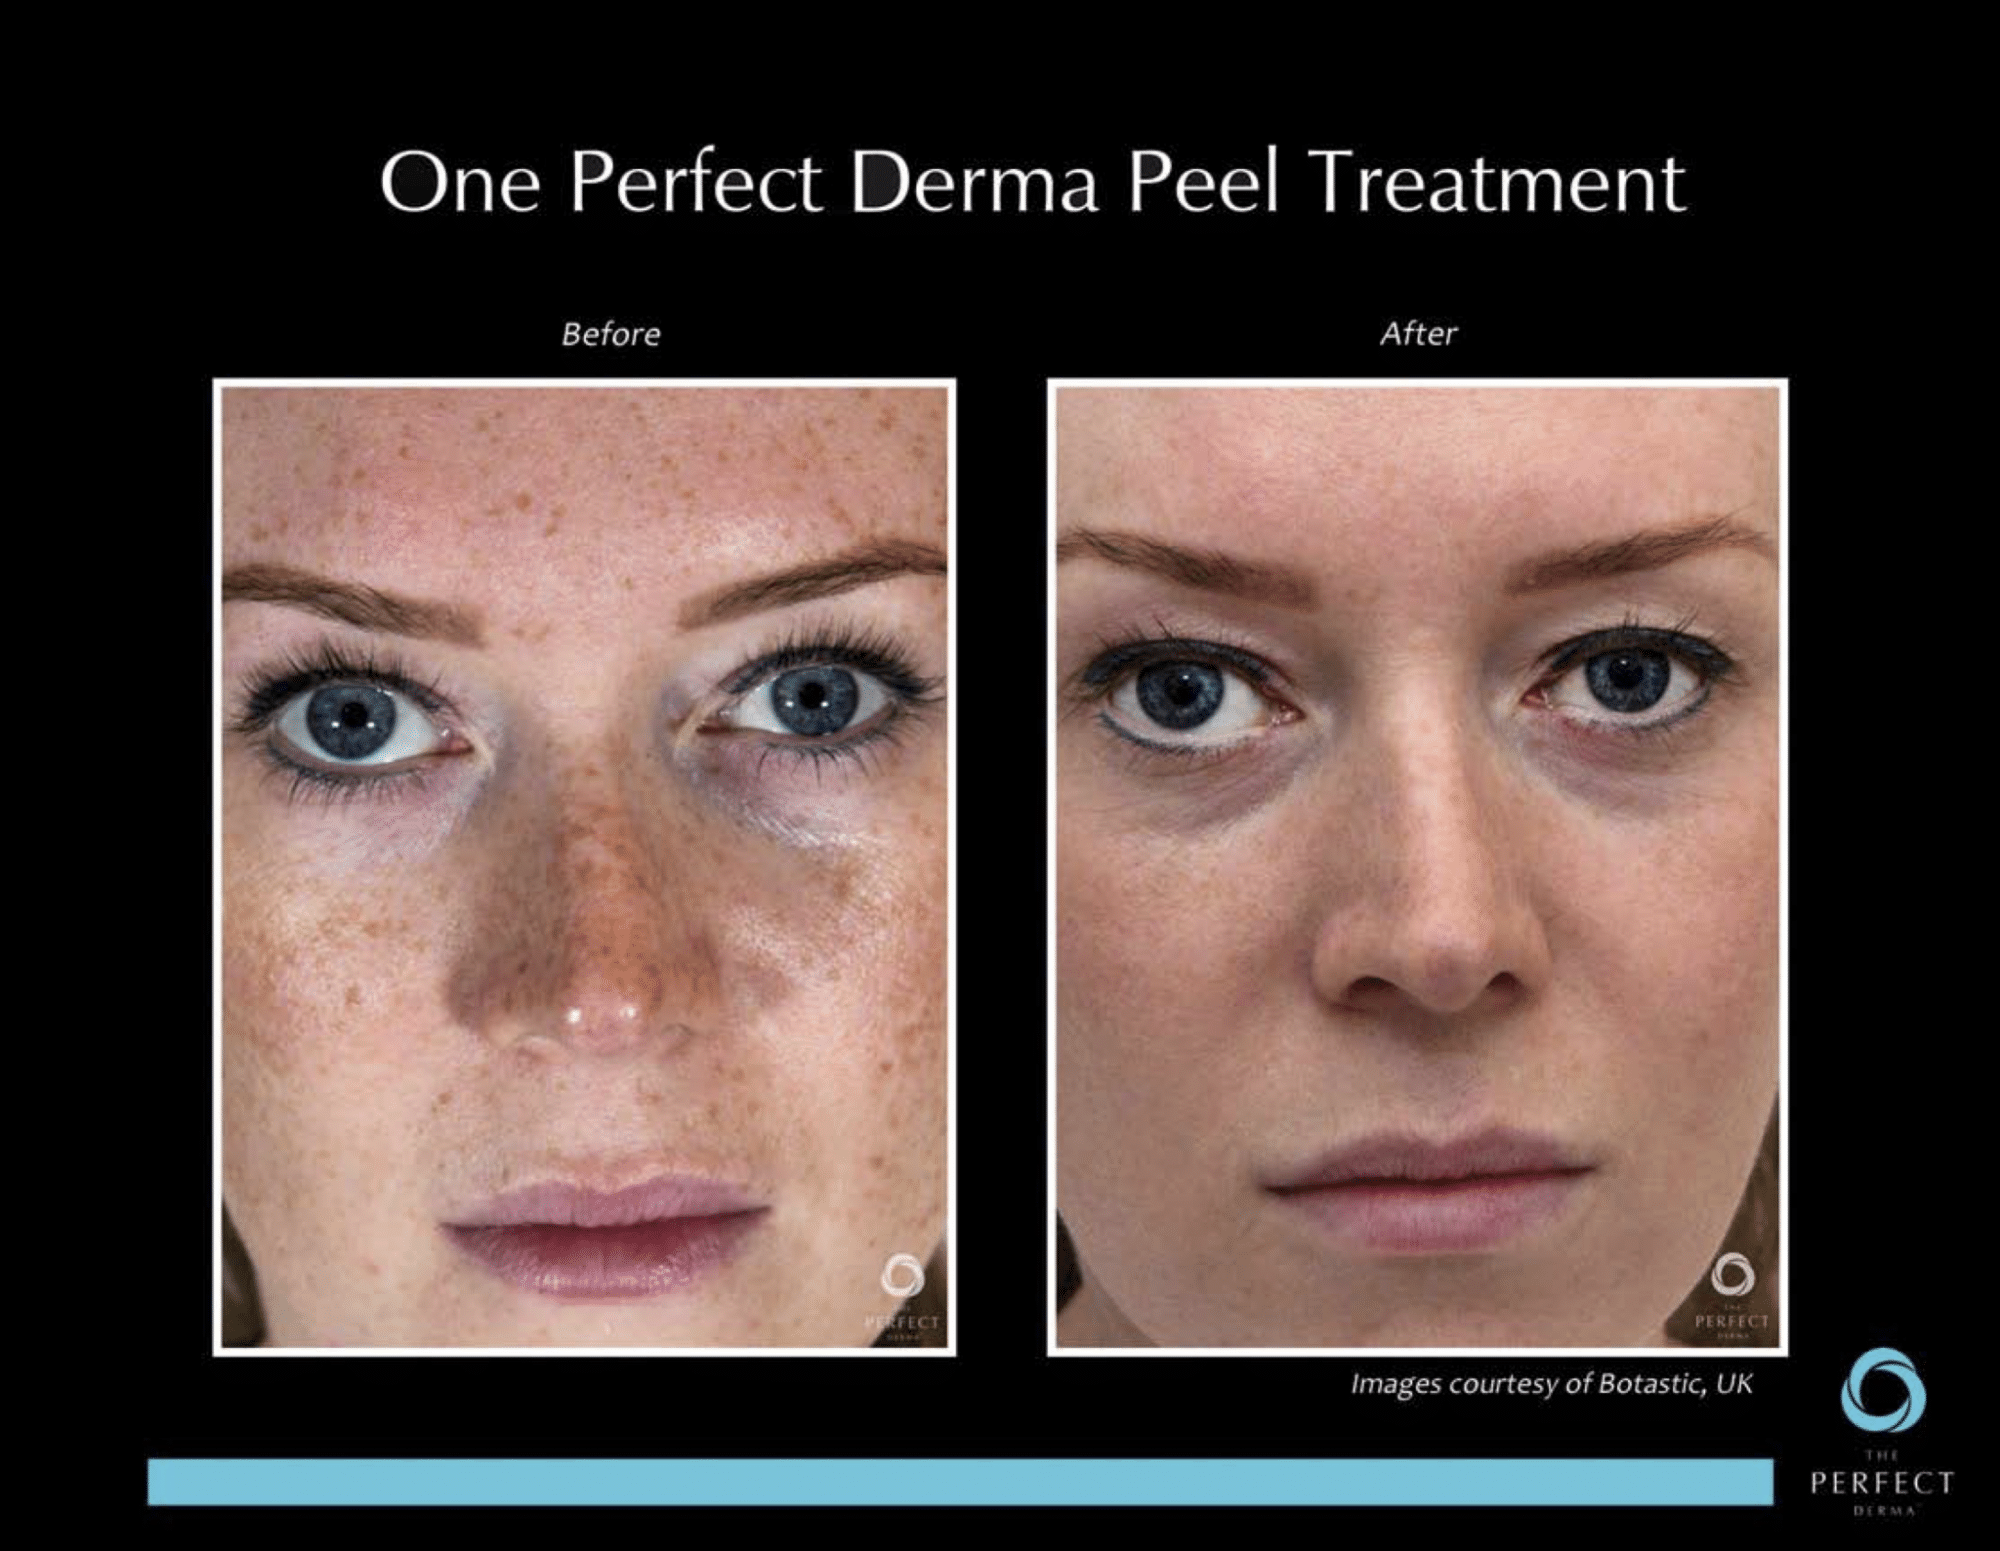 Before & After derma peel